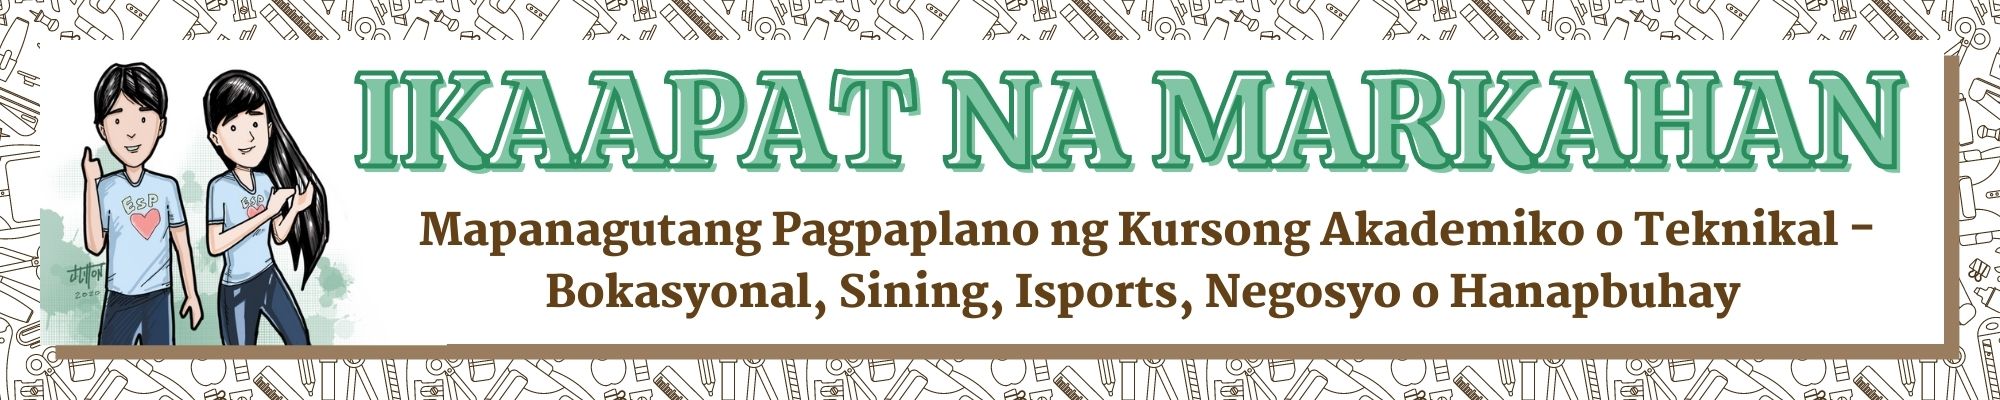 G9 - Edukasyon sa Pagpapakatao - Ikaapat na Markahan: Mapanagutang Pagpaplano ng Kursong Akademiko o Teknikal - Bokasyonal, Sining, Isports, Negosyo o Hanapbuhay